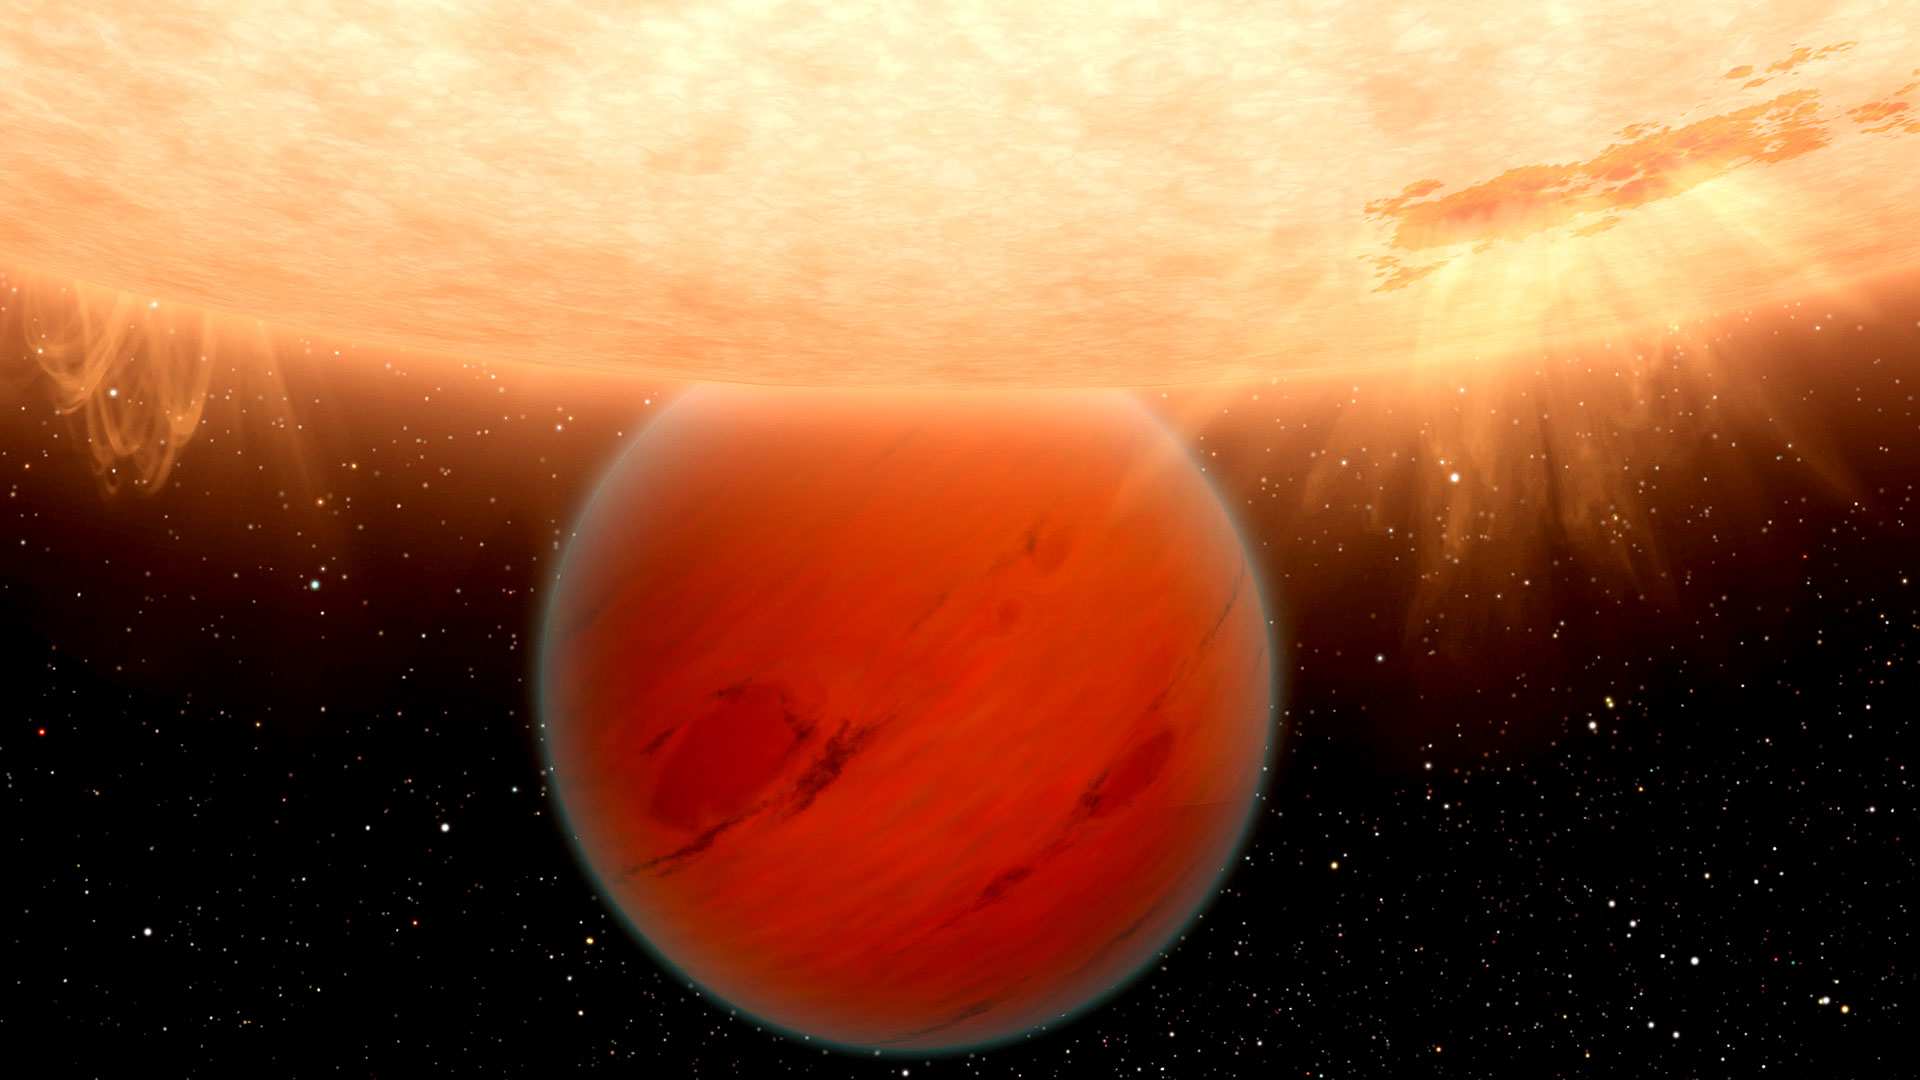 L'exoplanète GJ 436b a été découverte grâce au satellite Spitzer. Située à 33 années-lumière de la Terre, cette géante gazeuse, représentée ici par une vue d’artiste, secoue le monde de la planétologie. Alors que les lois de la thermochimie impliquaient qu’une planète de ce type devrait être riche en méthane et pauvre en monoxyde de carbone (CO), comme c’est le cas dans le Système solaire, GJ 436b contredit tous les modèles actuels. En effet, les observations de cette planète ne montrent pas de traces de méthane et, à l’inverse, une abondance de CO.
© Nasa, DP